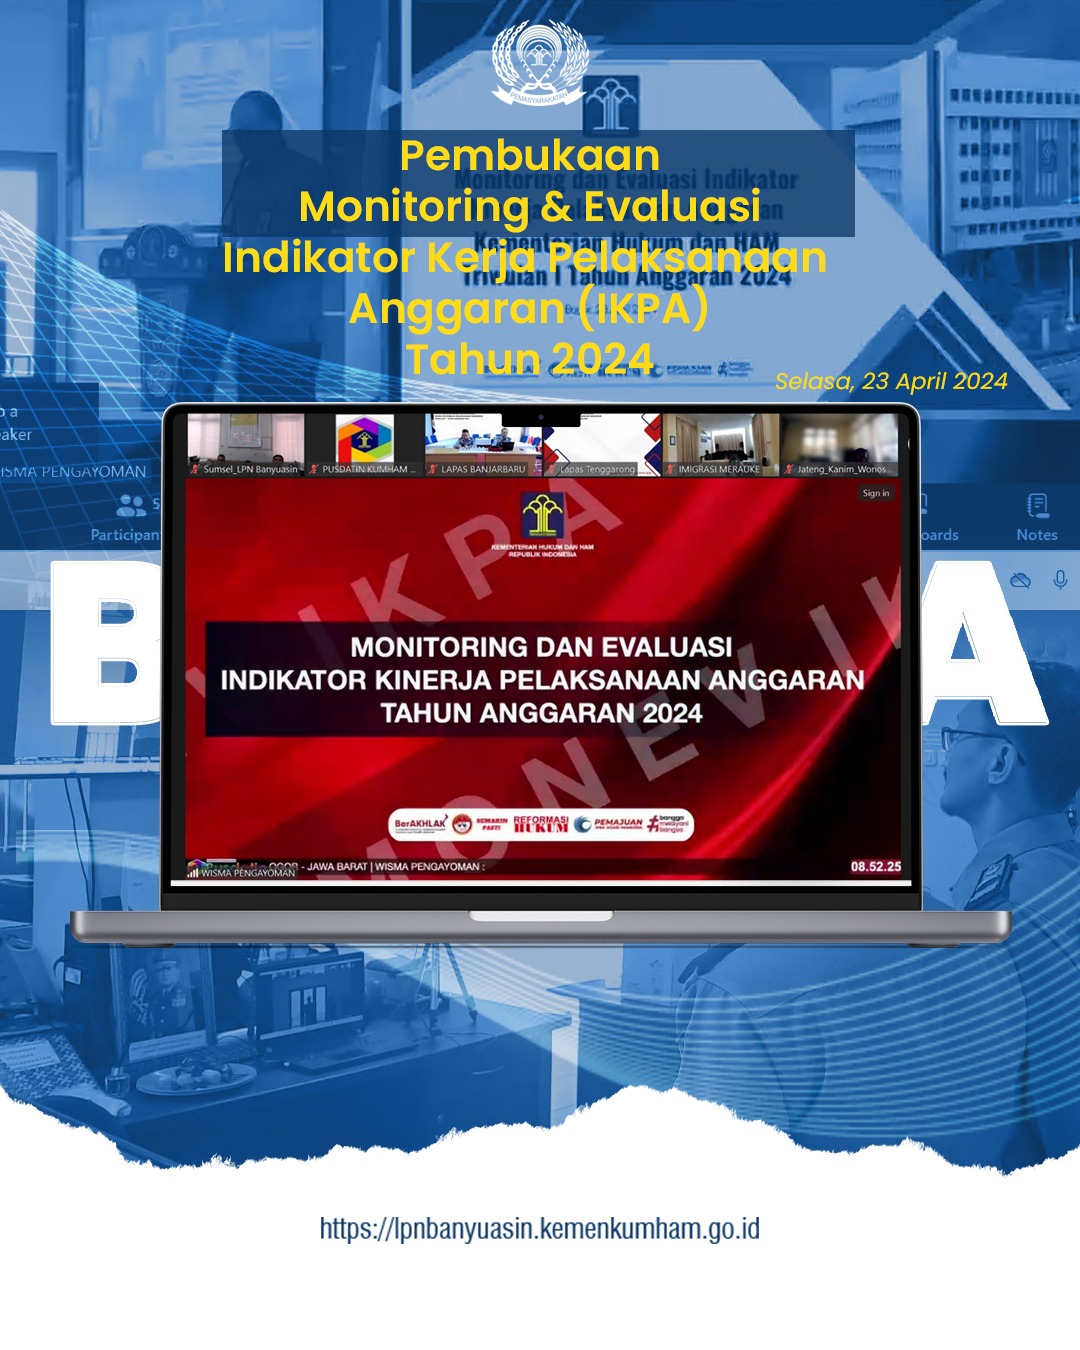 Pembukaan Monitoring dan Evaluasi (Monev) Indikator Kinerja Pelaksanaan Anggaran (IKPA) Tahun Anggaran 2024 Triwulan I